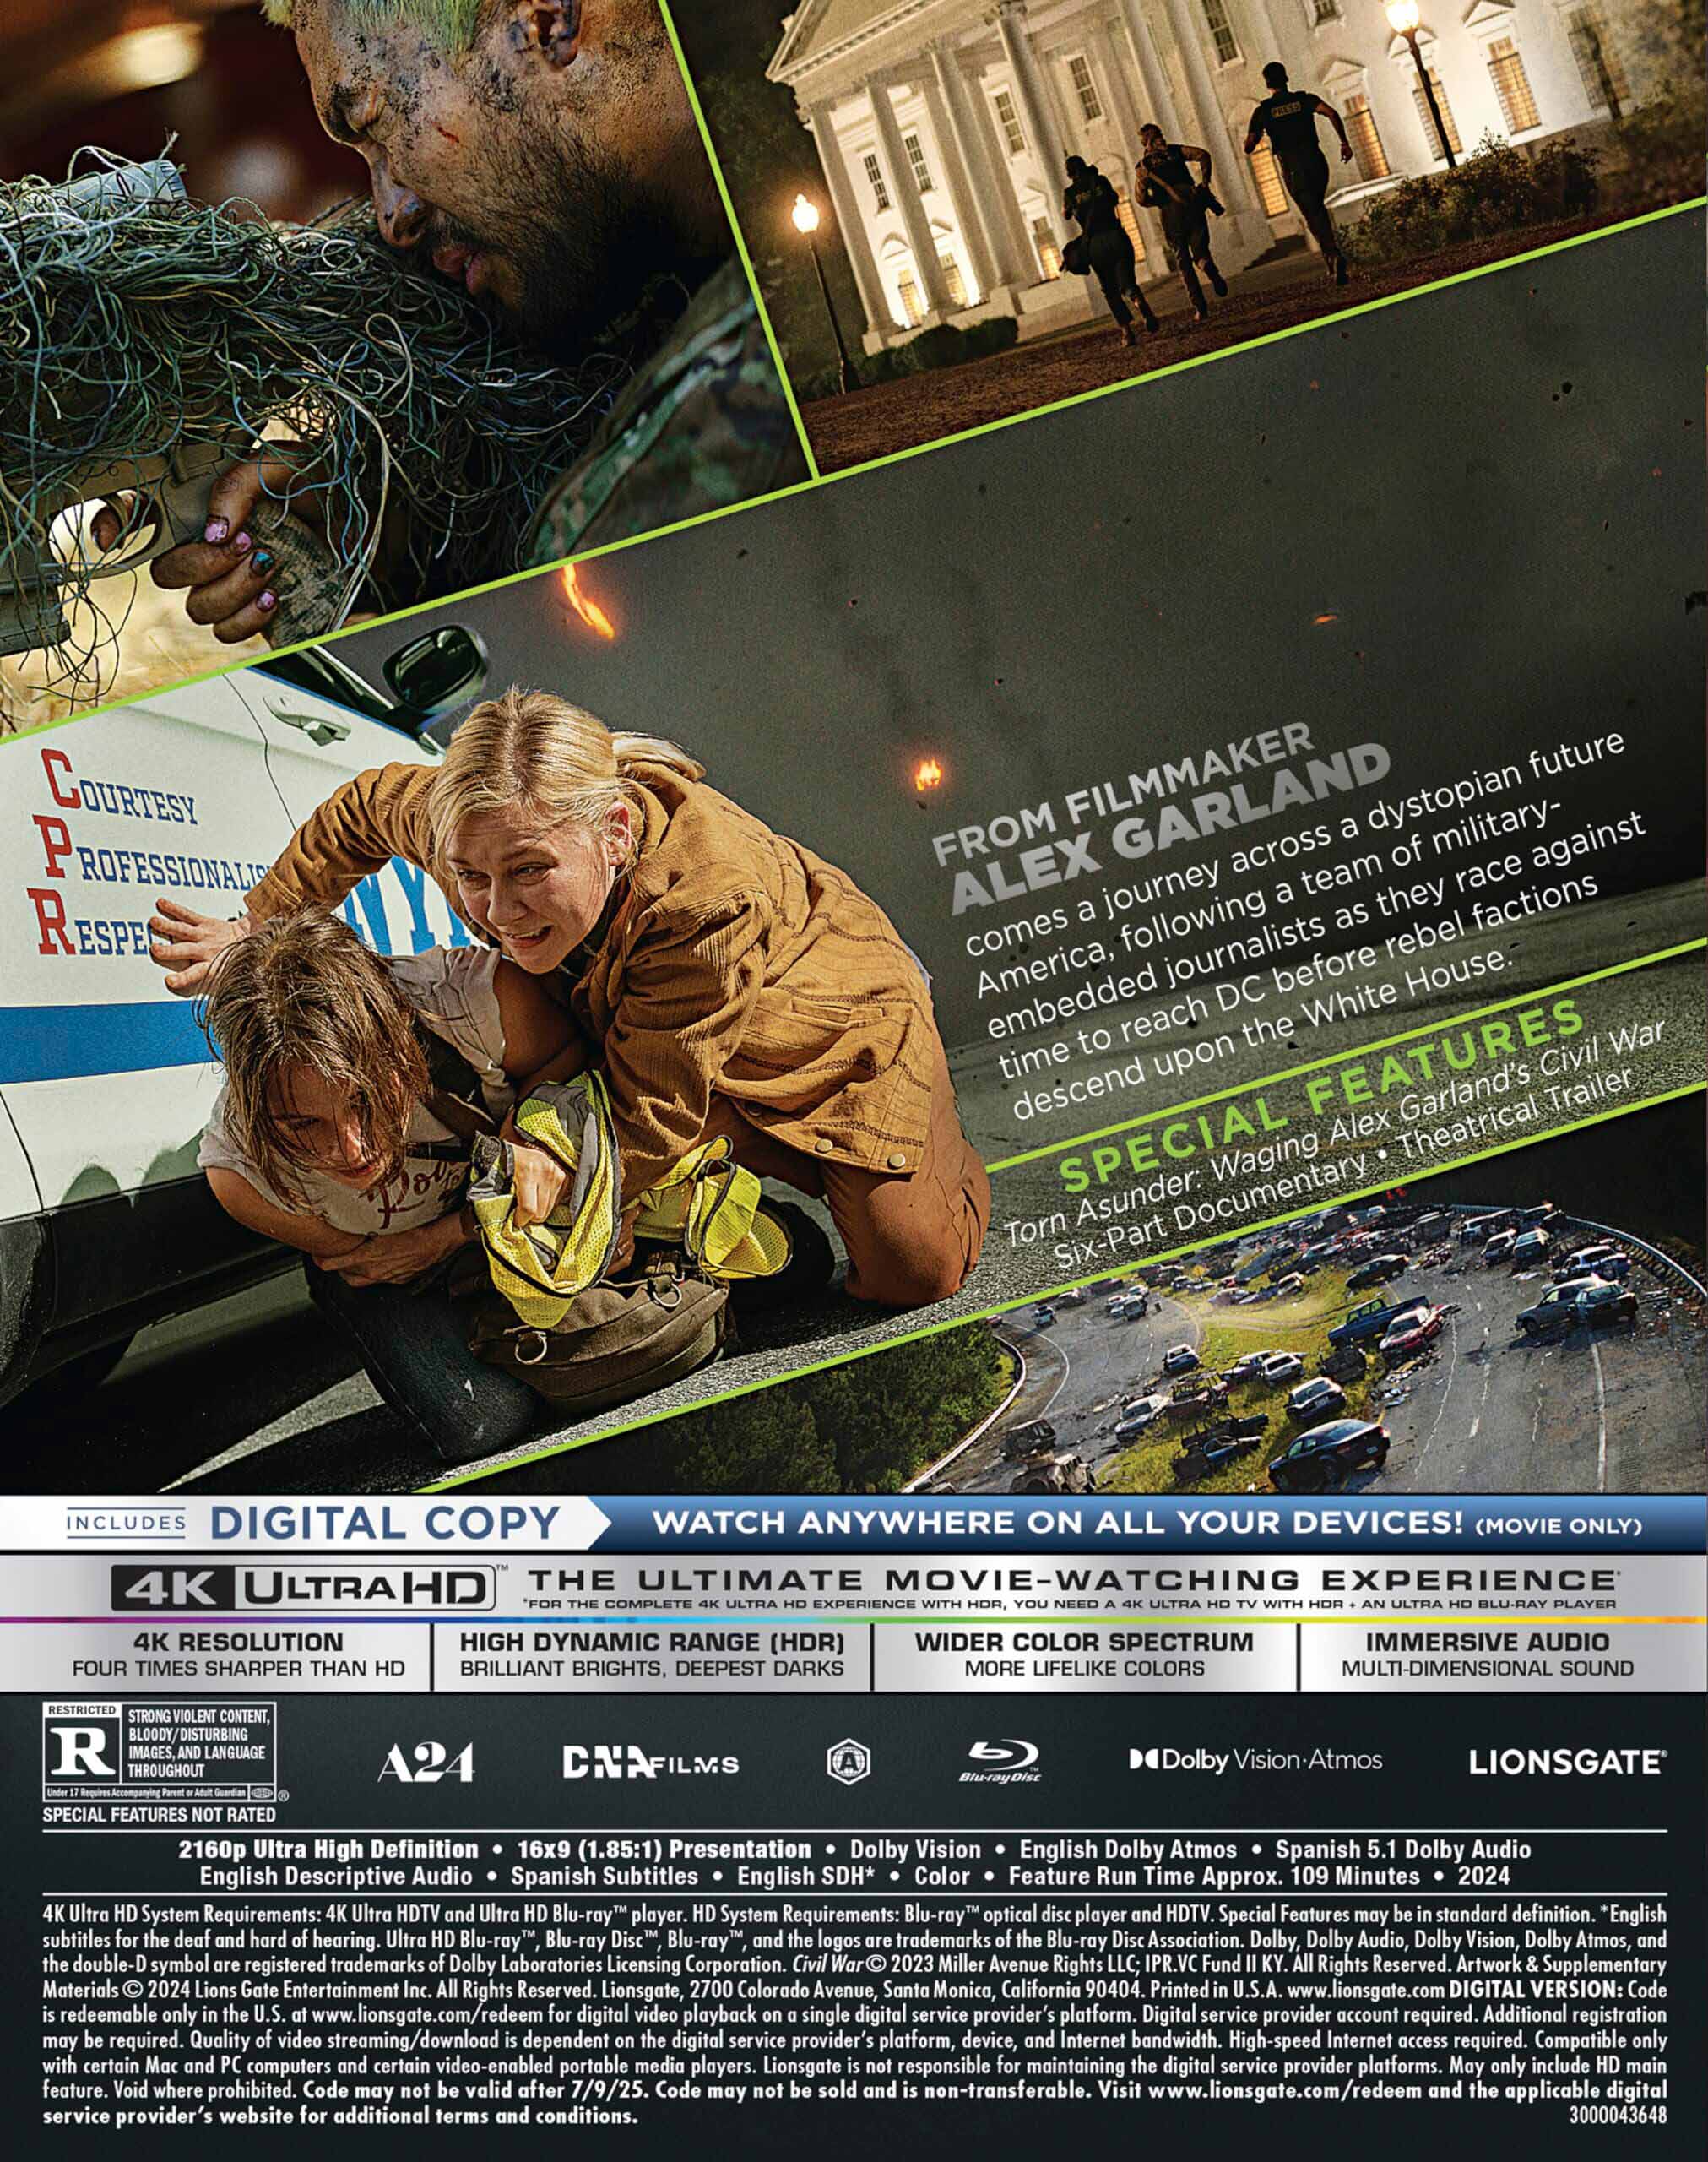 Civil War 4K UHD + Blu-Ray (US Import)